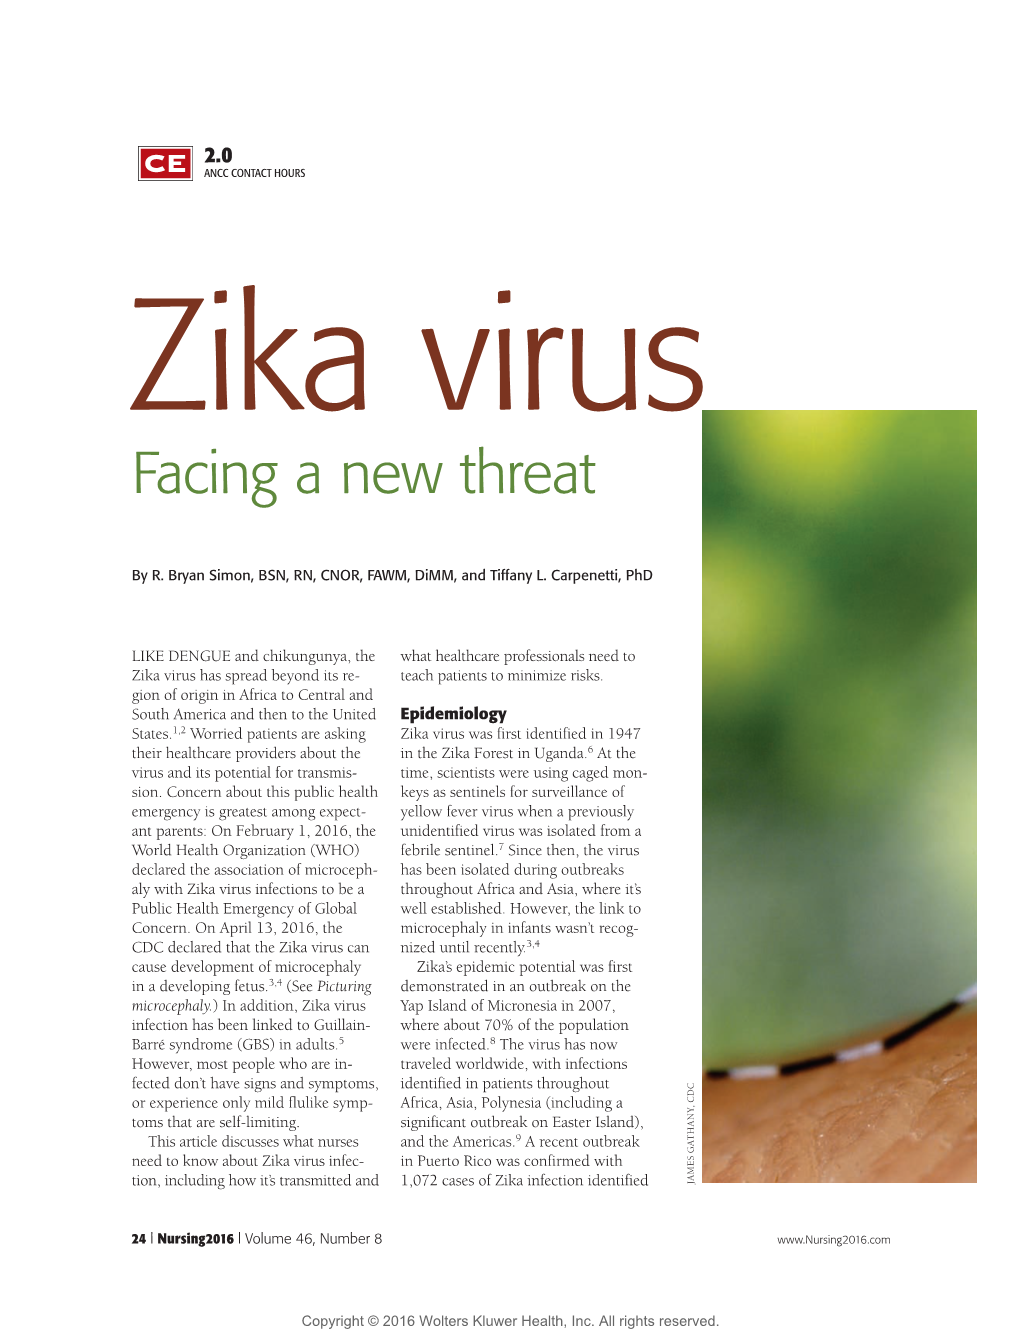 Zika Virus Facing a New Threat